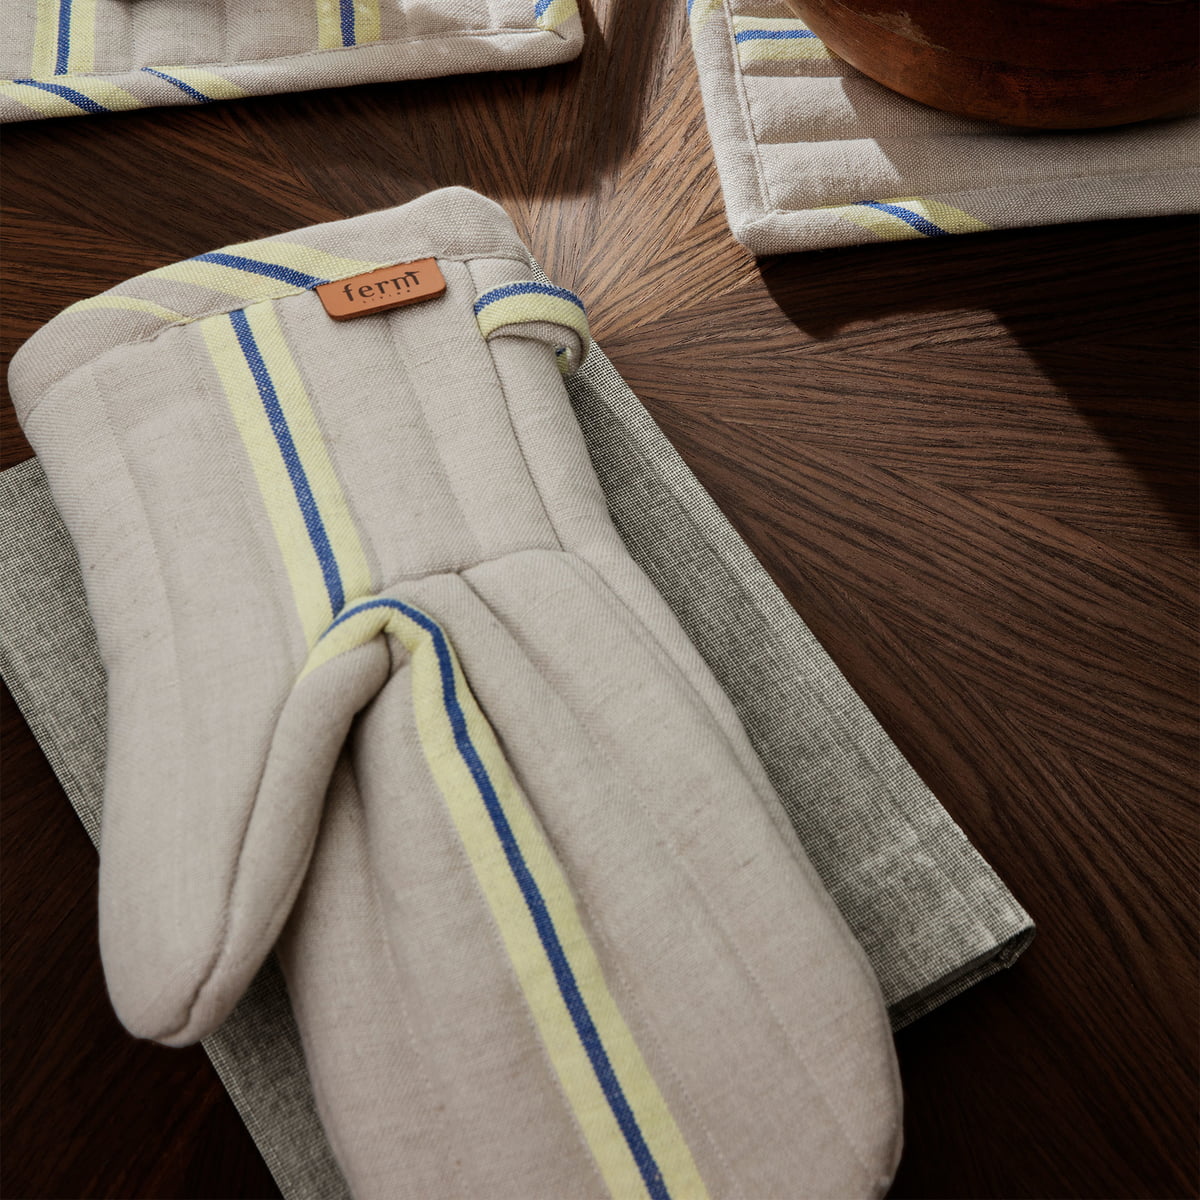 Natural Linen Apron, Tea Towel and Oven Mitt Set